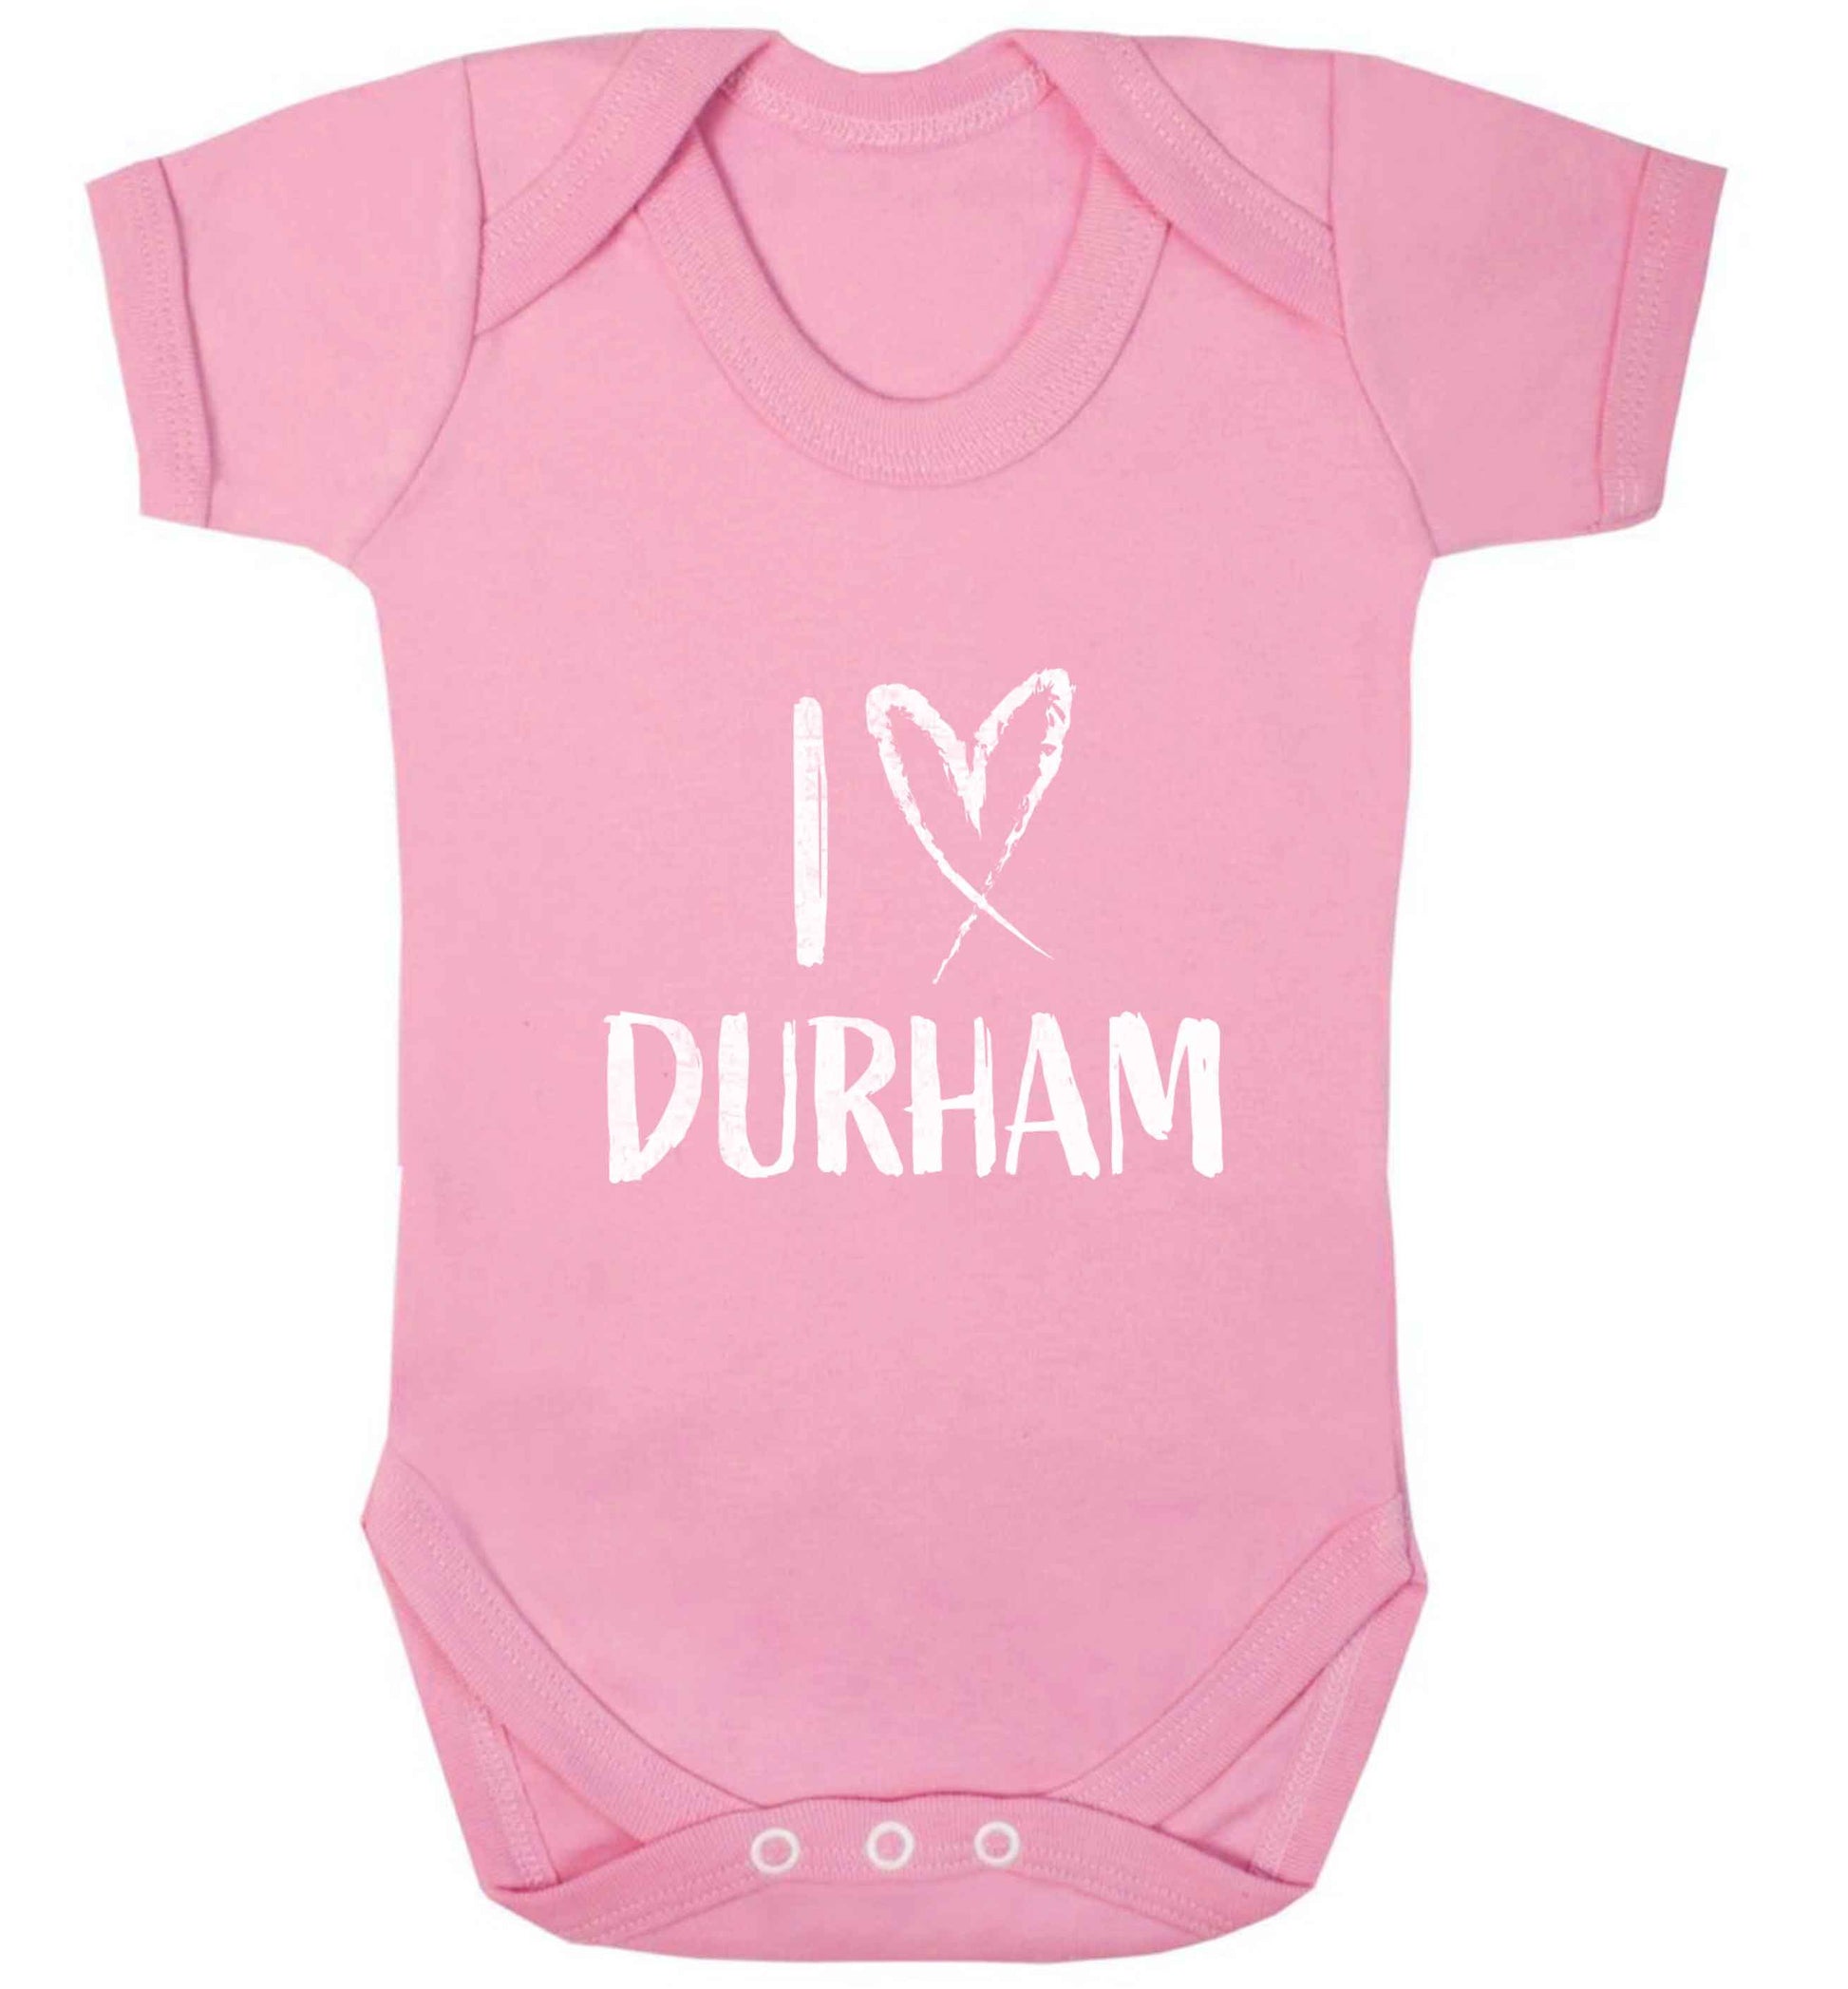 I love Durham baby vest pale pink 18-24 months